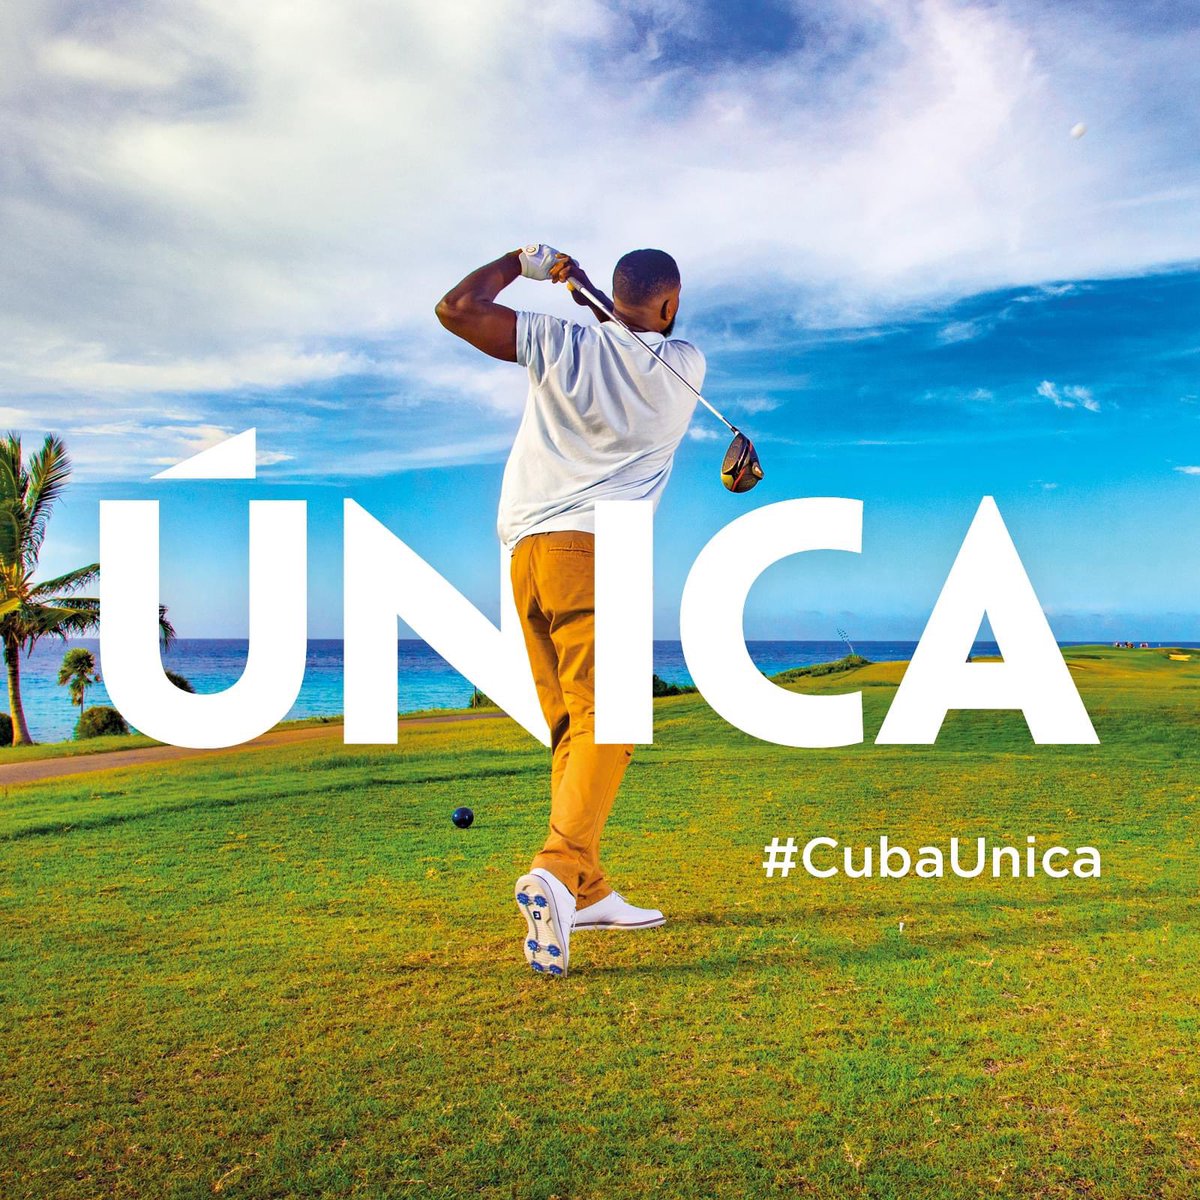 🏌️‍♂️ Sumérgete en la pasión por el golf en #CubaÚnica. Un destino que combina la belleza del Caribe con emocionantes jornadas en el campo. ⛳️🌴 
Toda la información sobre el destino Cuba aquí 👉 cuba.travel
#Golf #CubaUnica #CaribbeanGolf 🏝️🏌️‍♀️